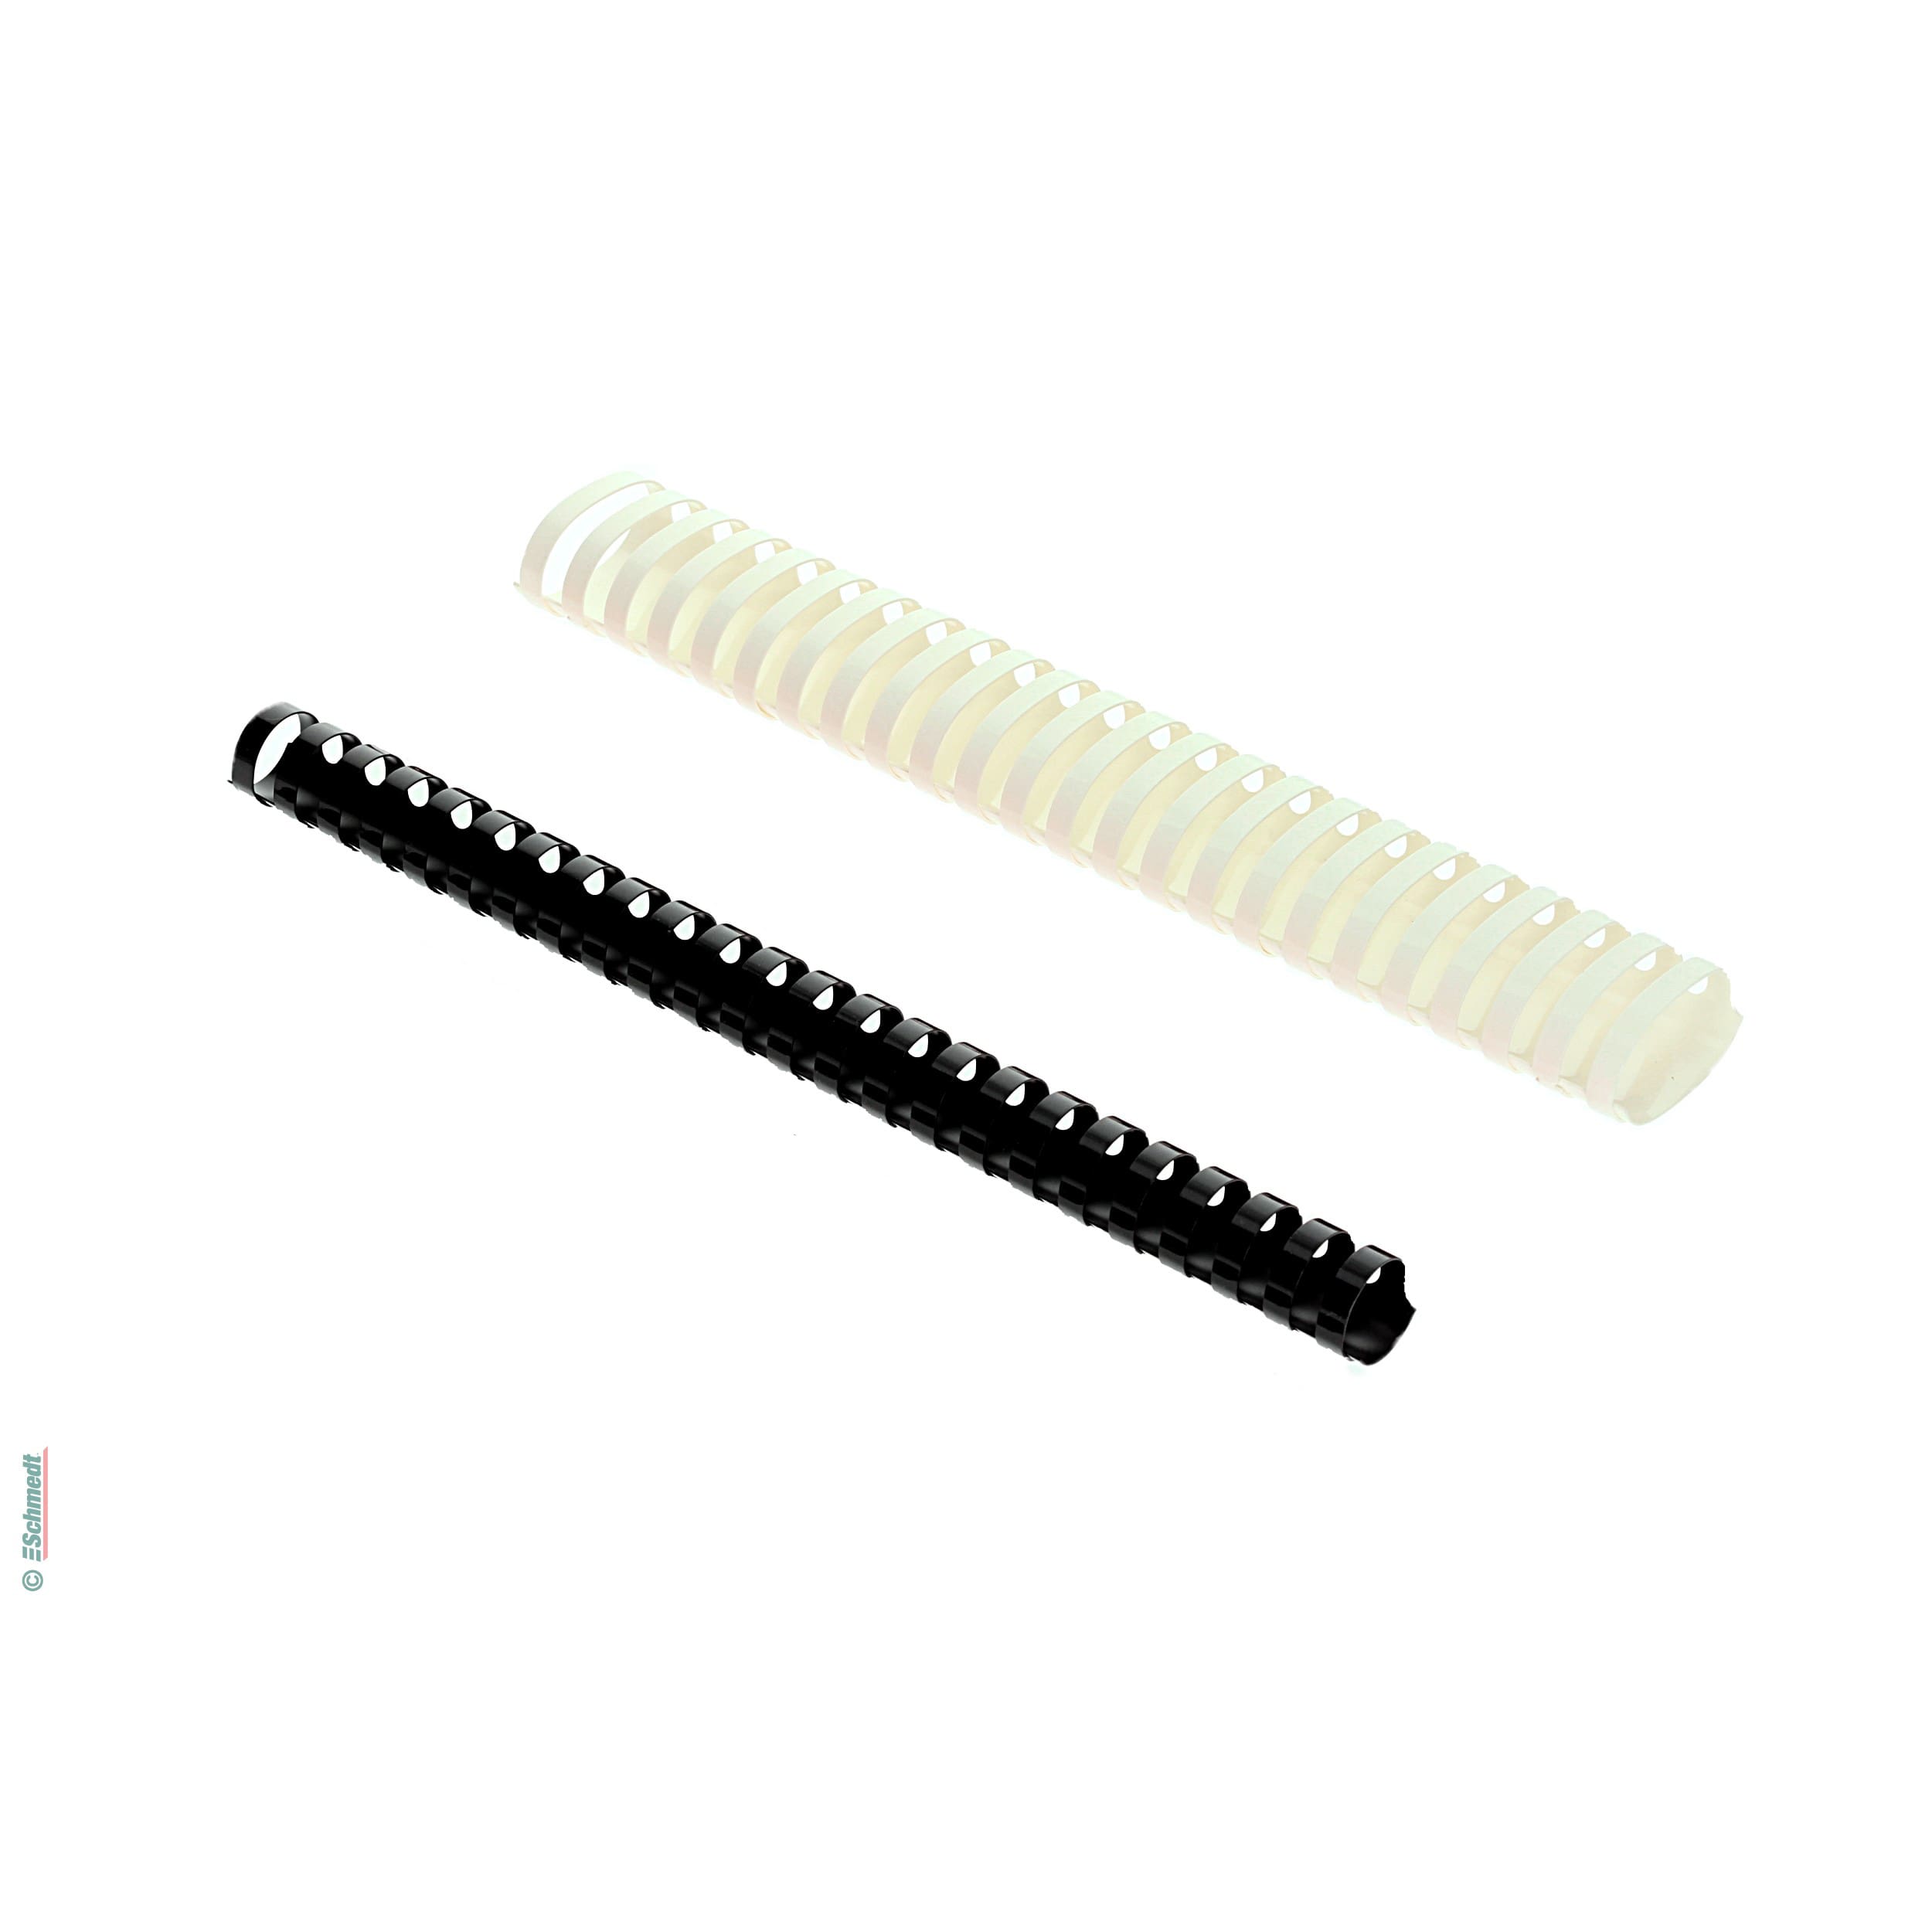 Canutillos de plástico - redondo - Paso US - 21 anillas - para DIN A4 - Aplicación: para el procesamiento en encuadernadoras de canutillos d...